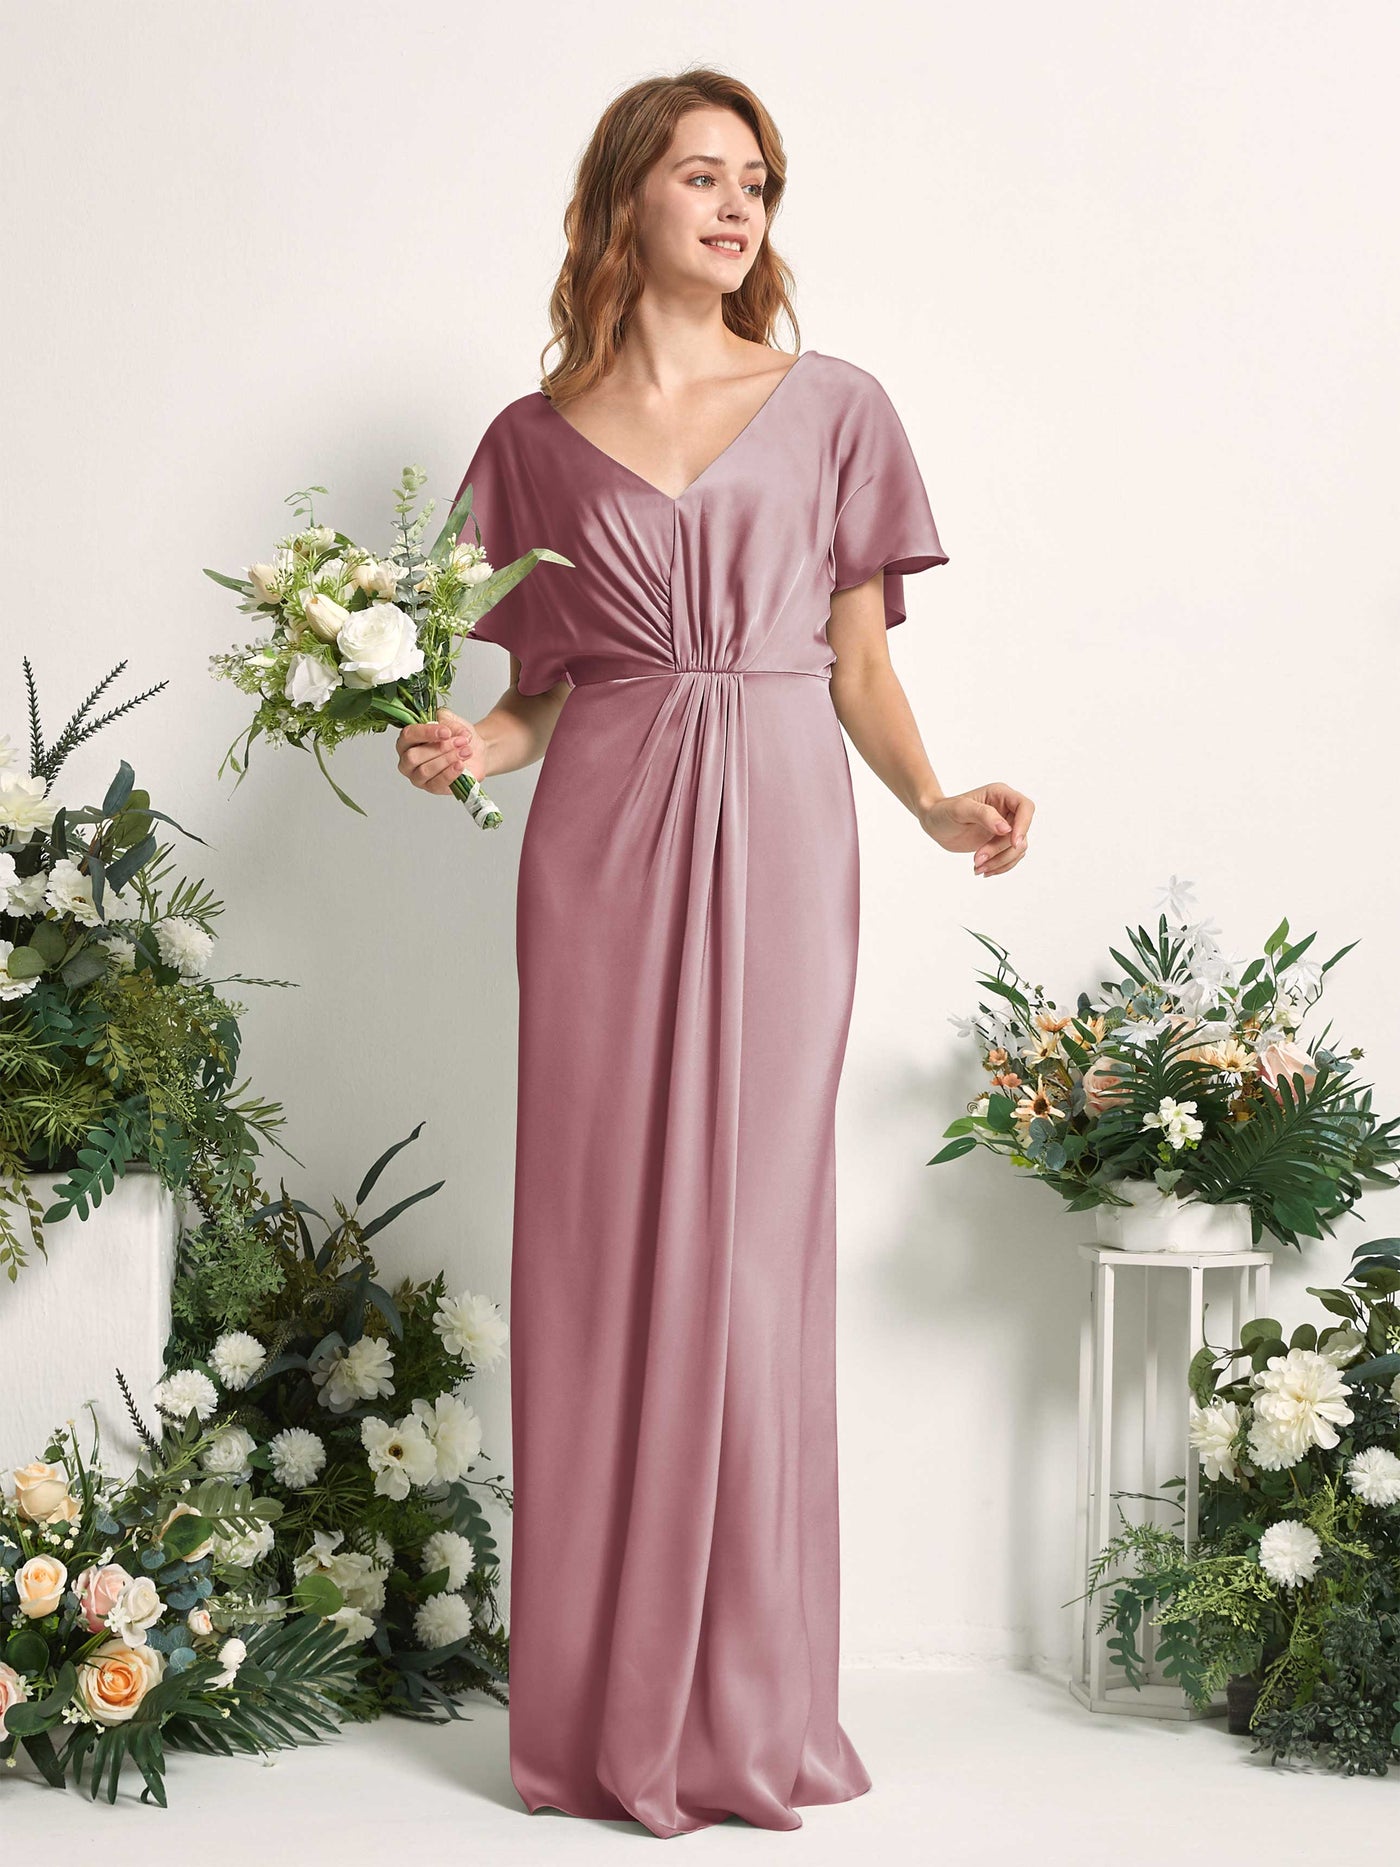 Rose Quartz Bridesmaid Dresses Bridesmaid Dress A-line Satin V-neck Full Length Short Sleeves Wedding Party Dress (80225566)#color_rose-quartz